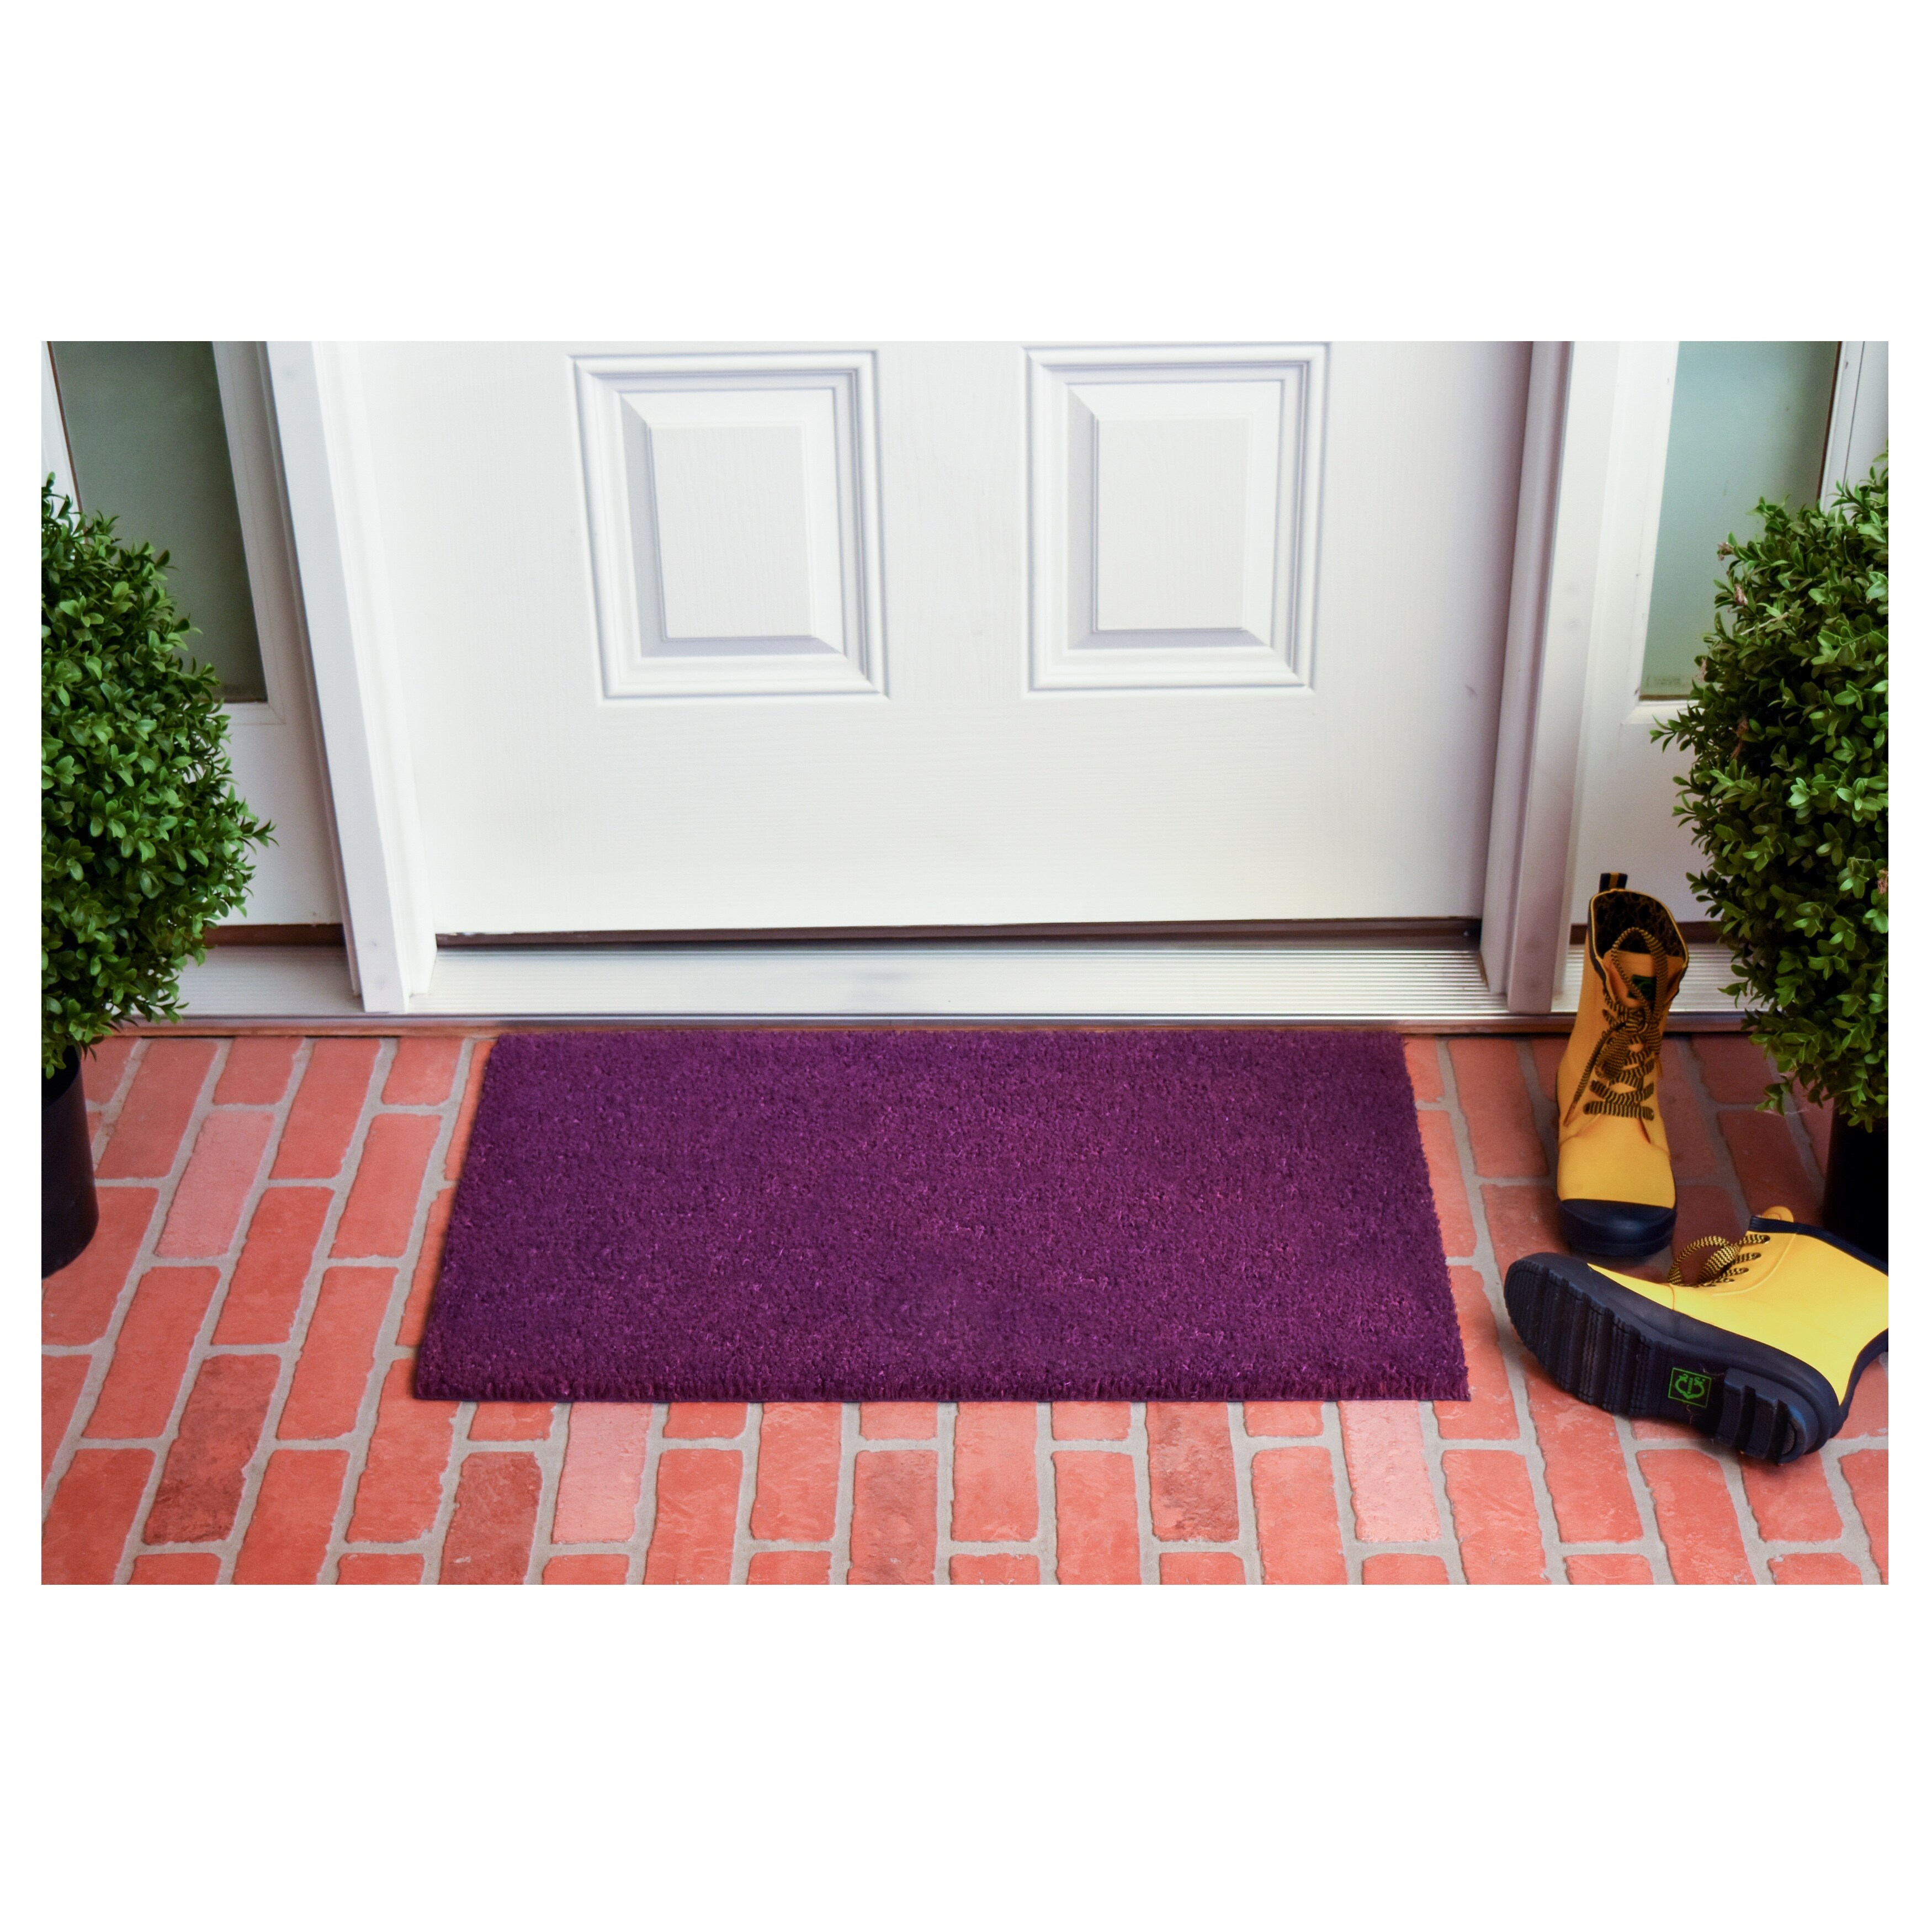 Calloway Mills Collins Purple Pastel Doormat, 24" x 36" - 24 x 36 in